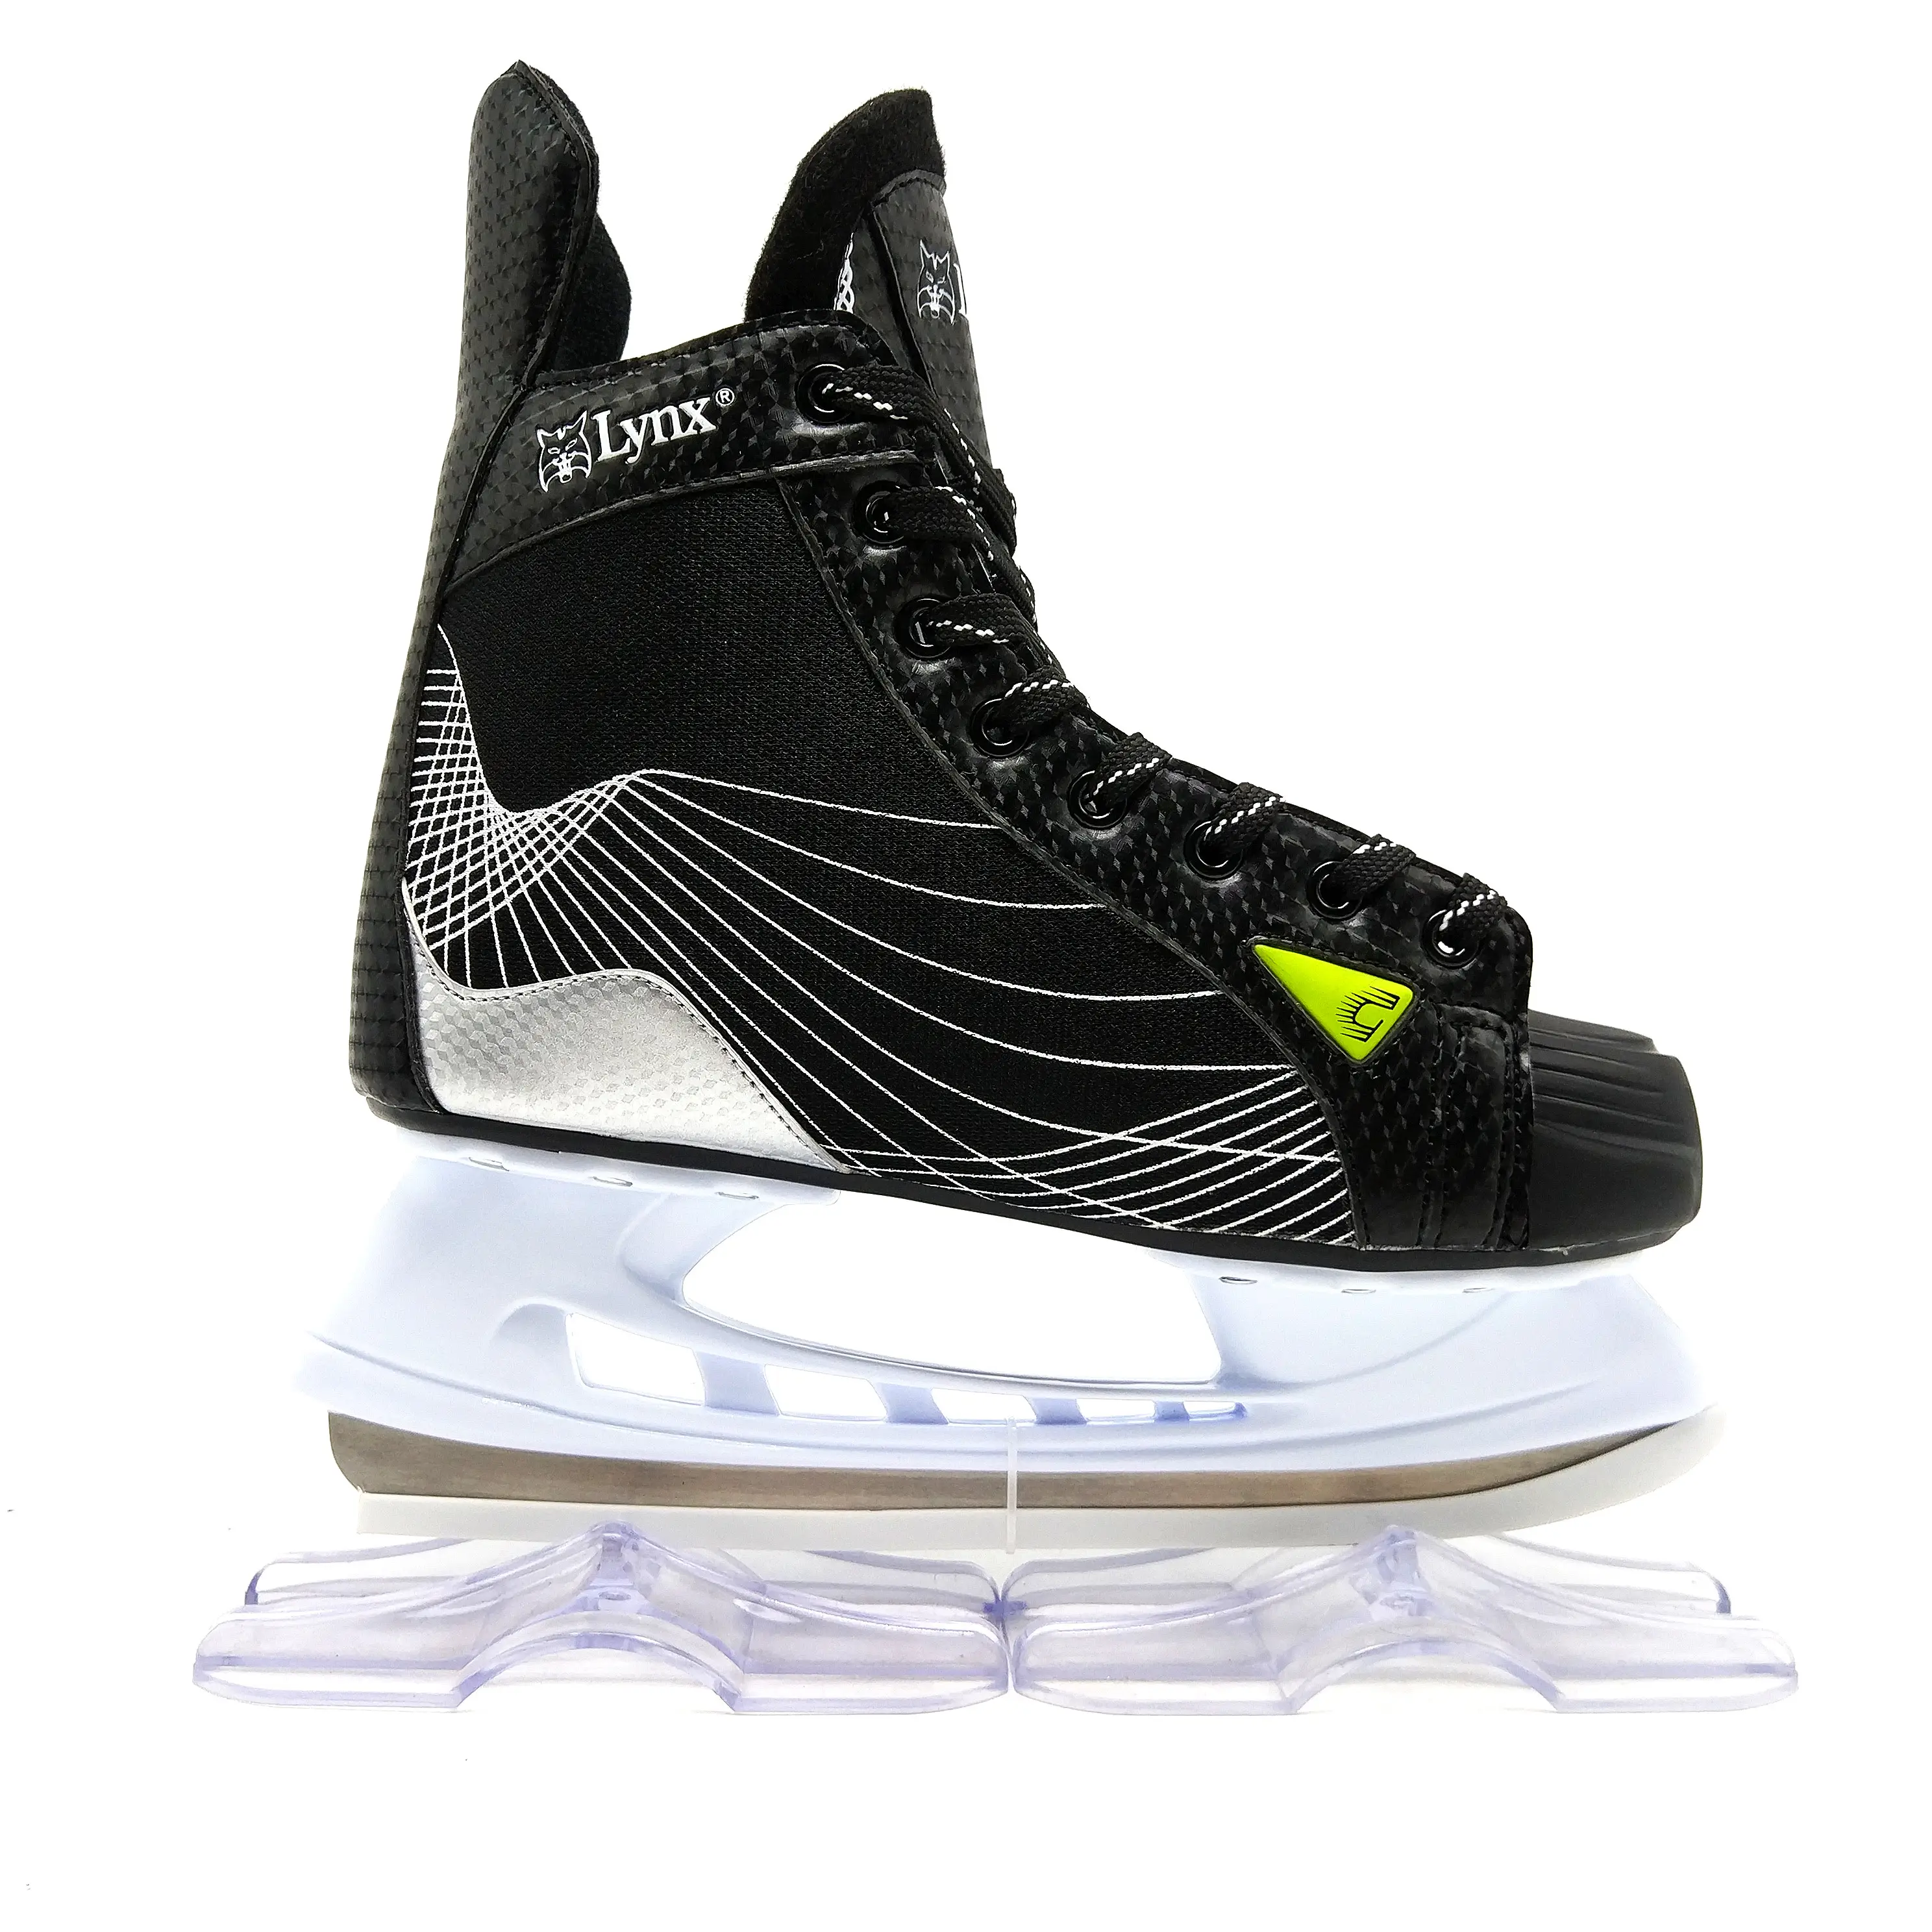 Zapatos de patín de hielo soy luna para niños y adultos profesionales, patines de hockey sobre hielo, gran oferta, 2018